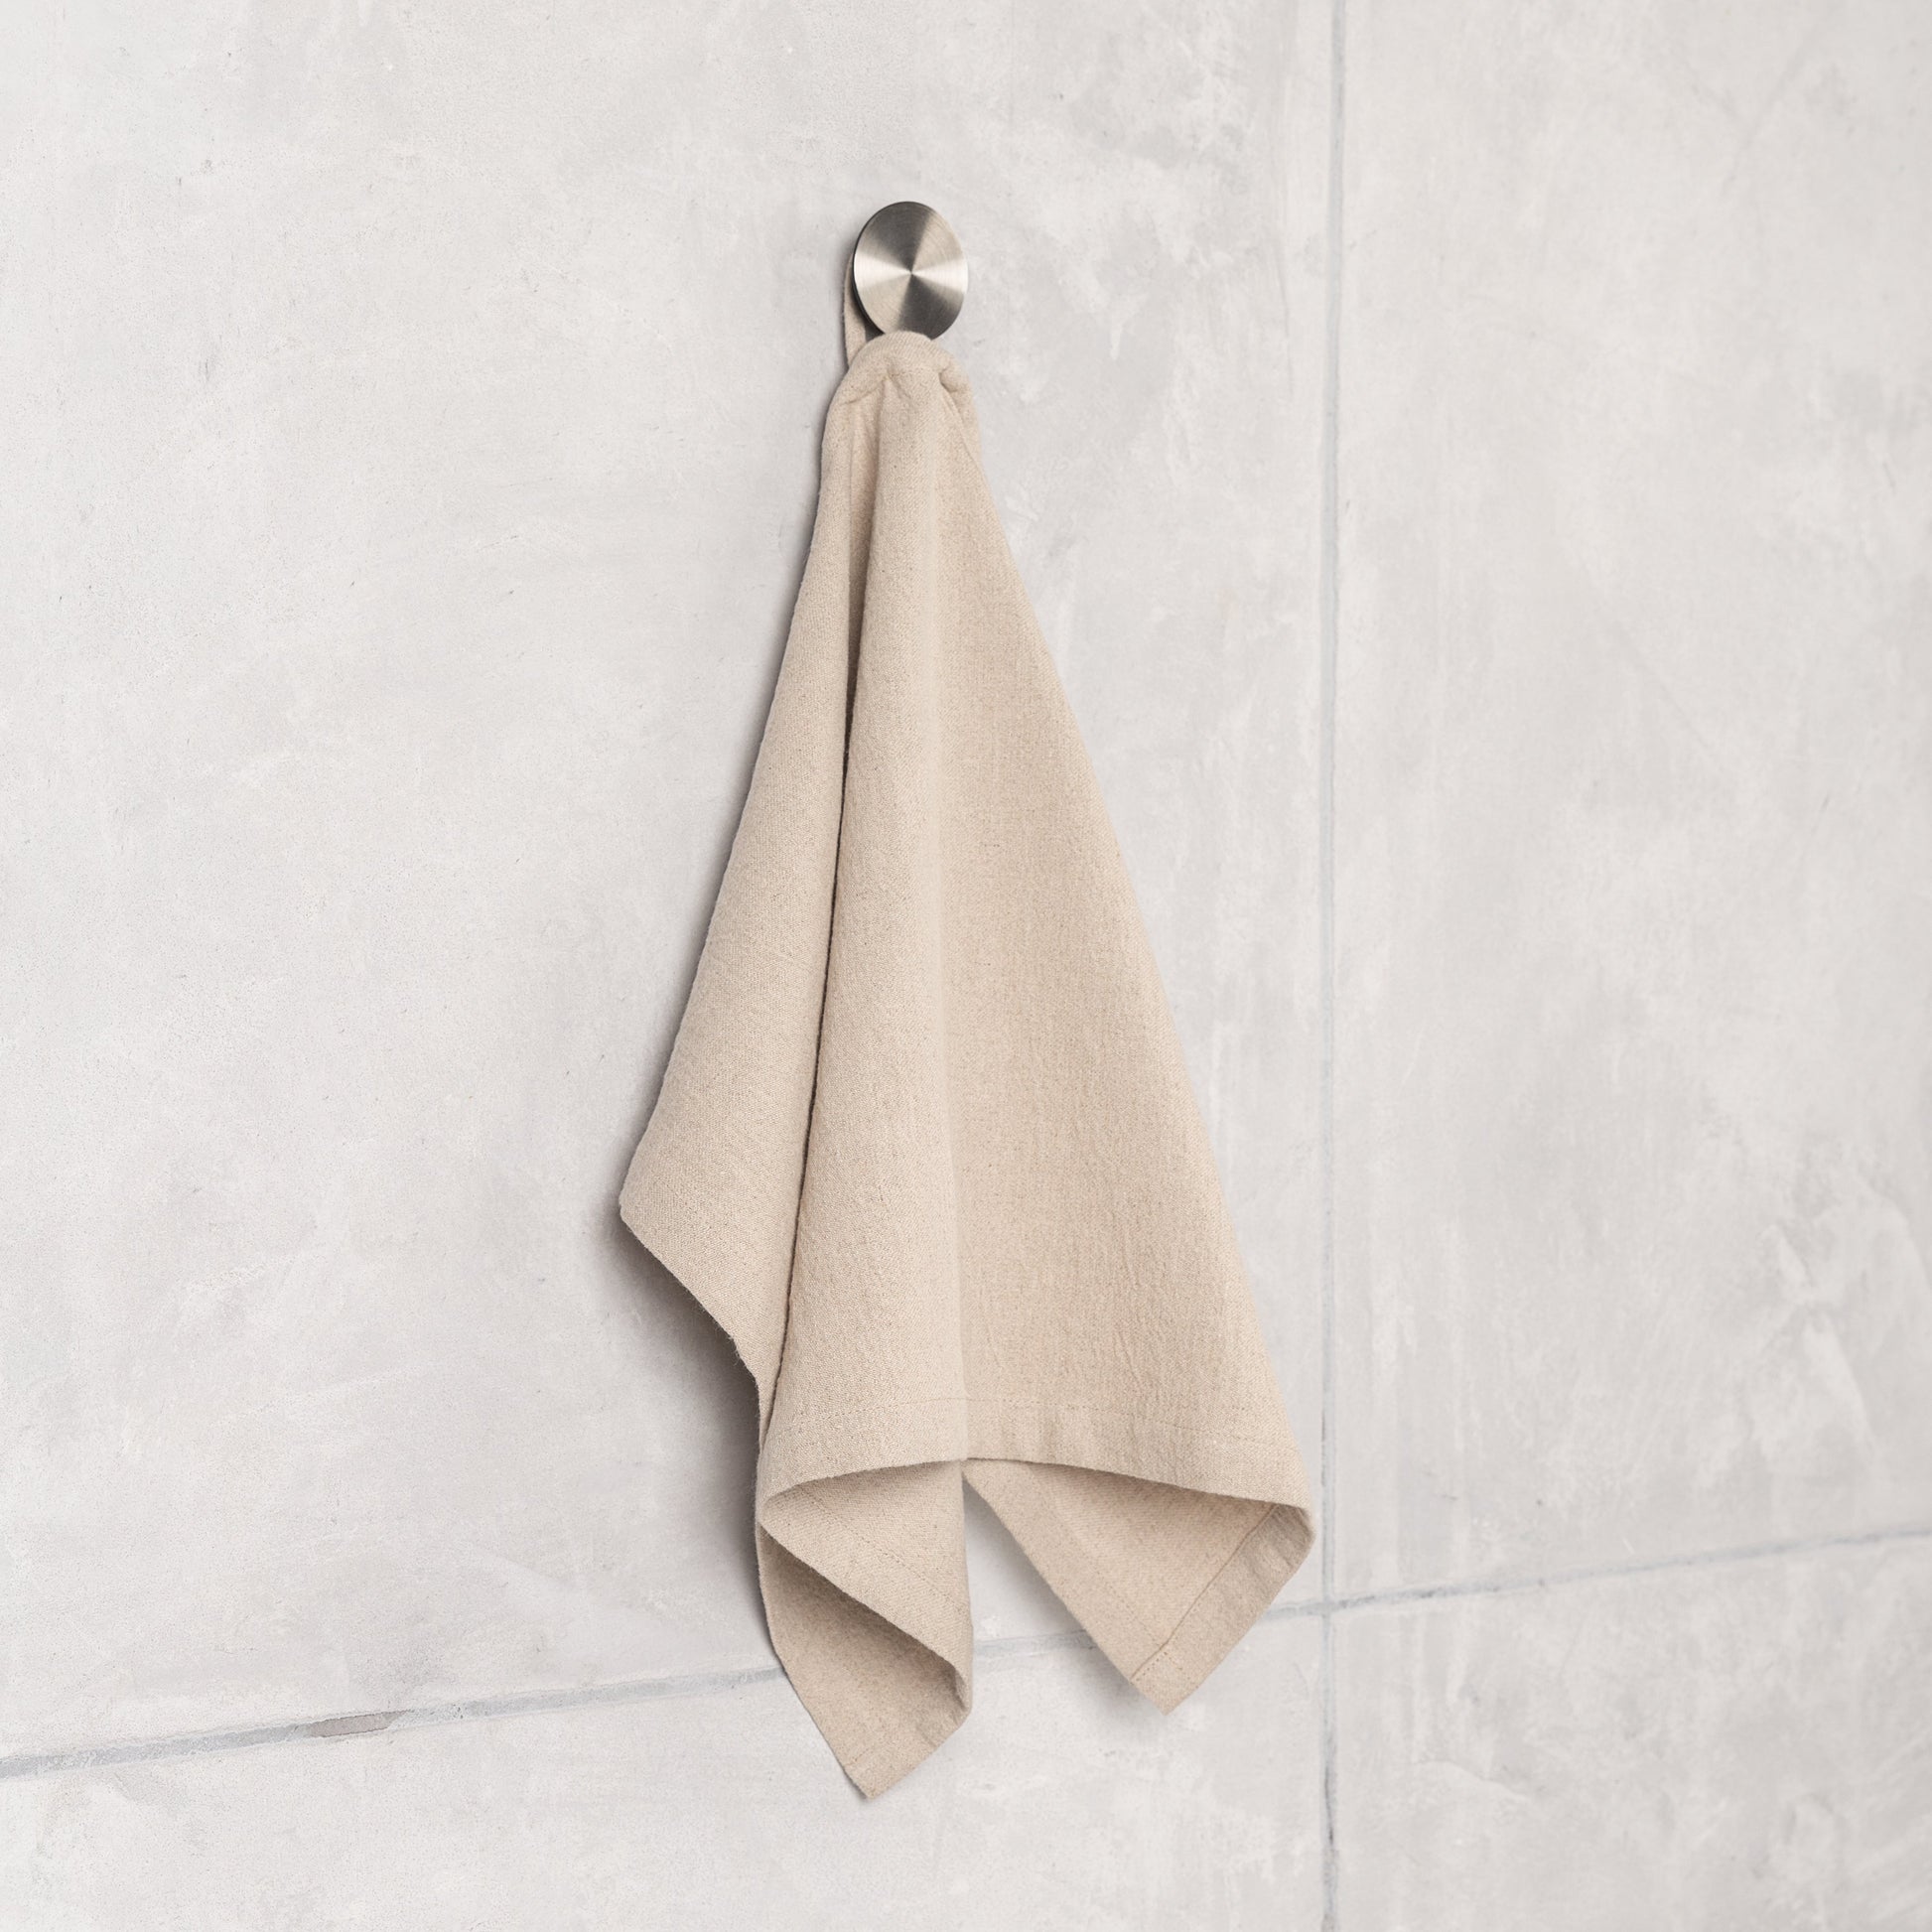 Hemp linen bathroom towel | natural